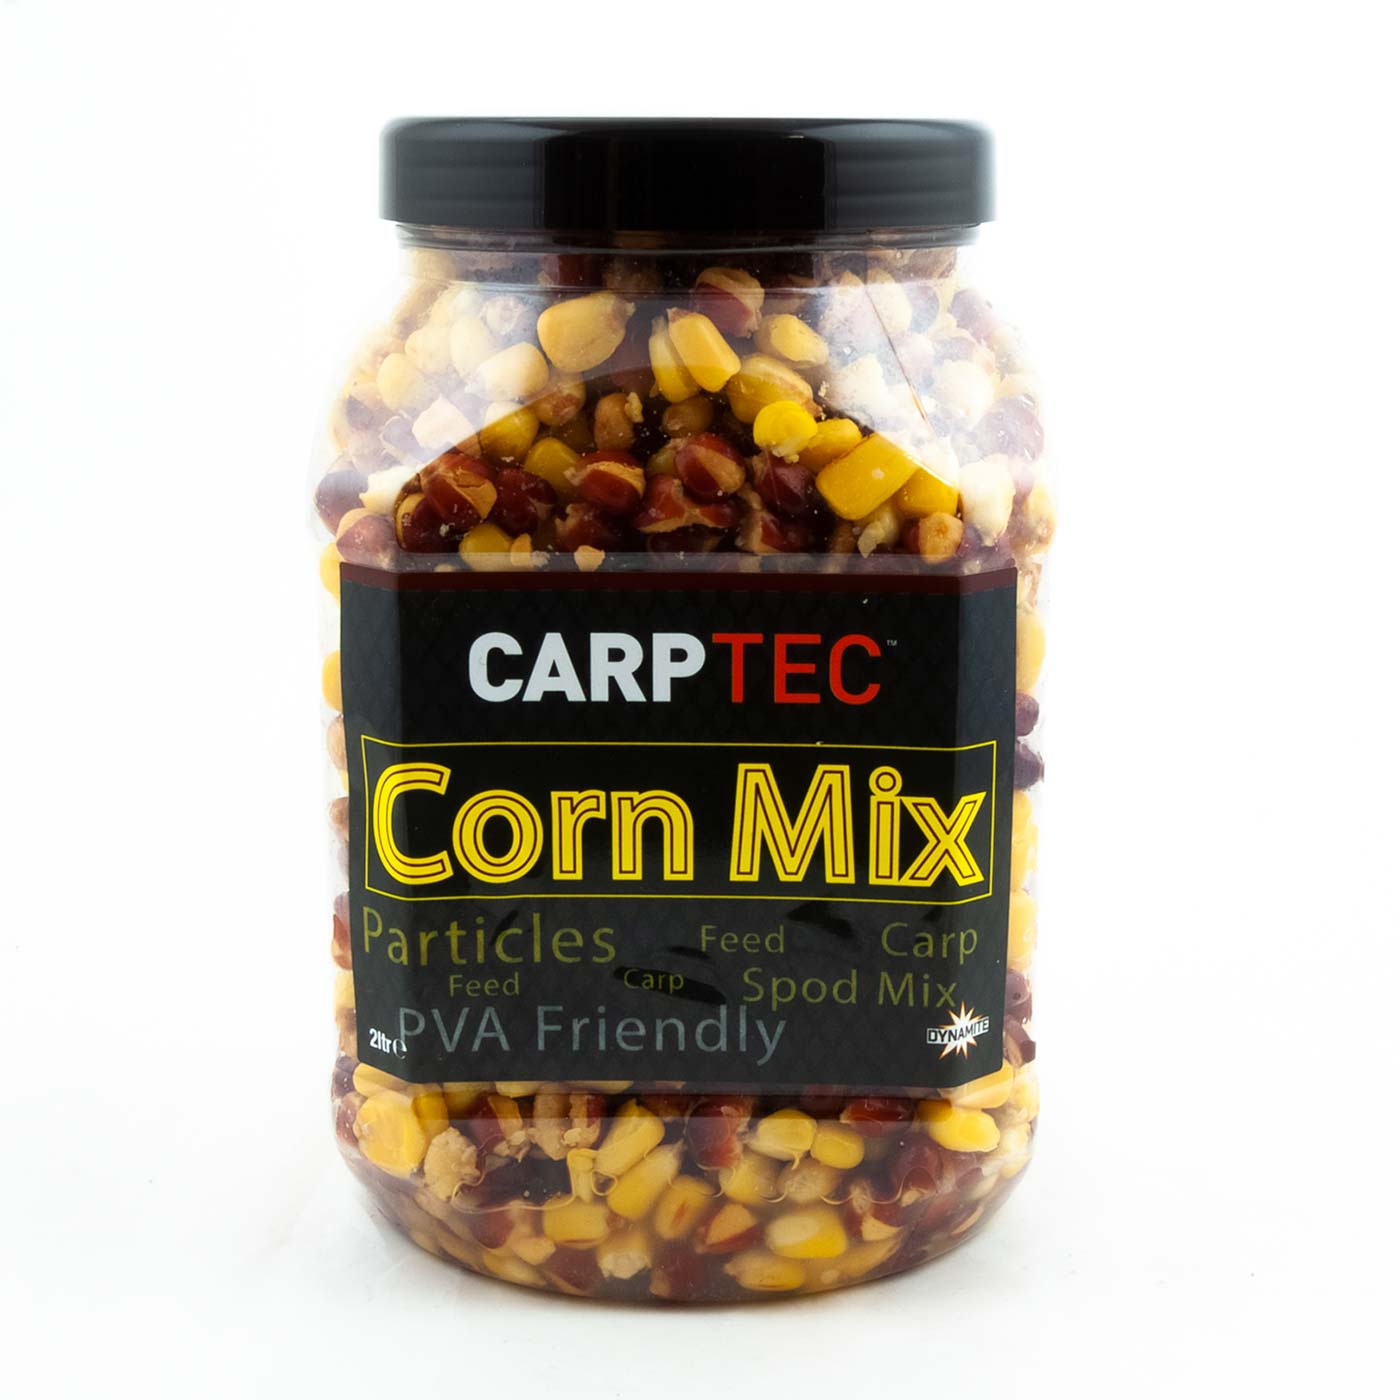 Carptec Particles - Corn Mix